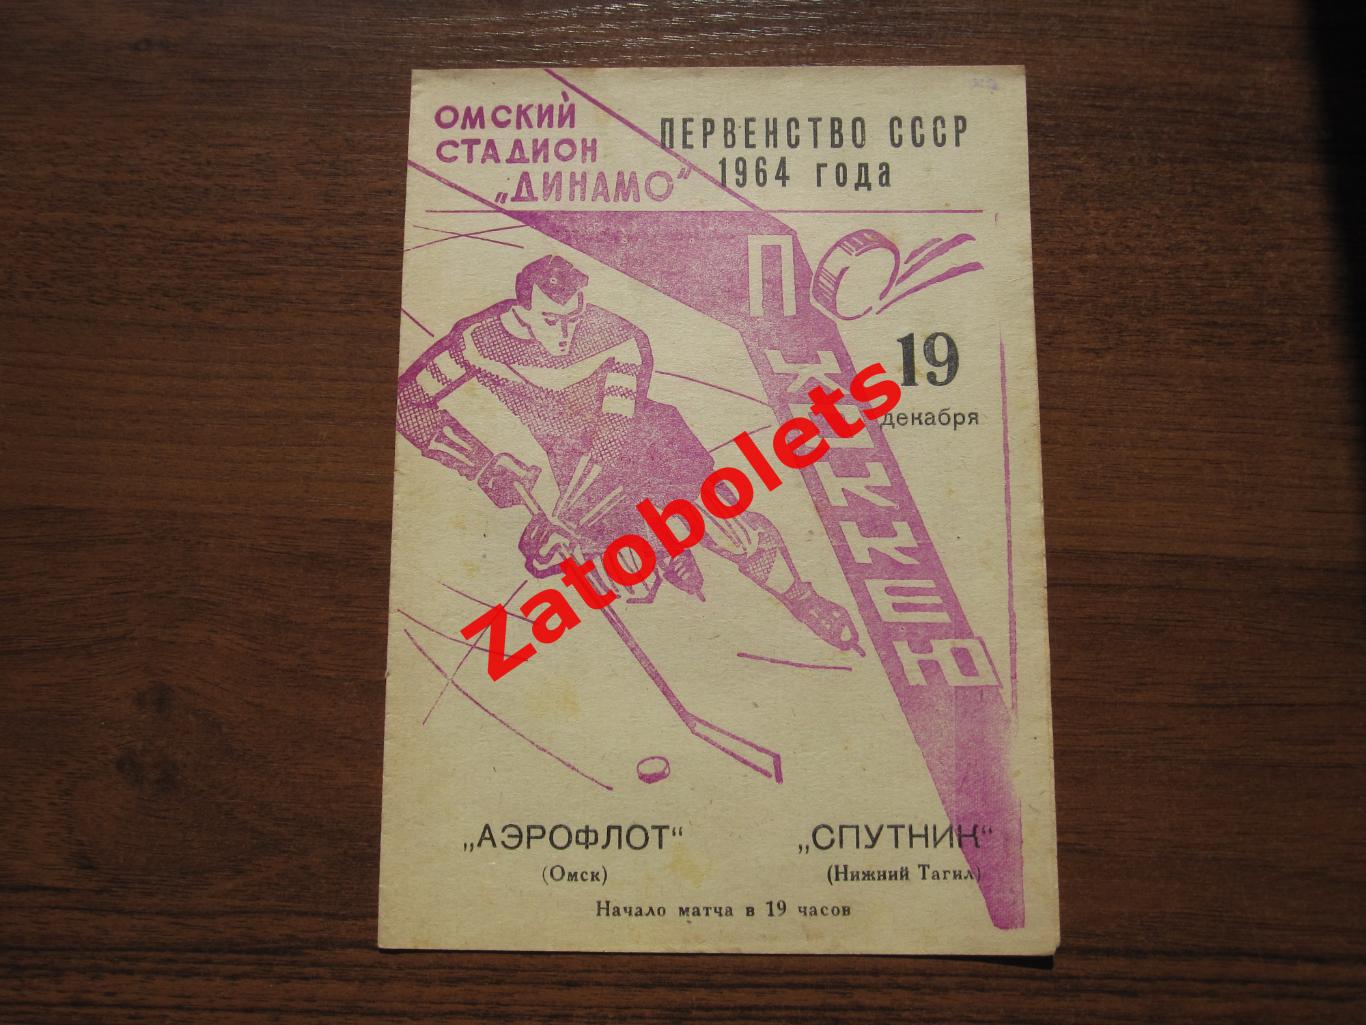 Аэрофлот Омск - Спутник Нижний Тагил 19.12.1964